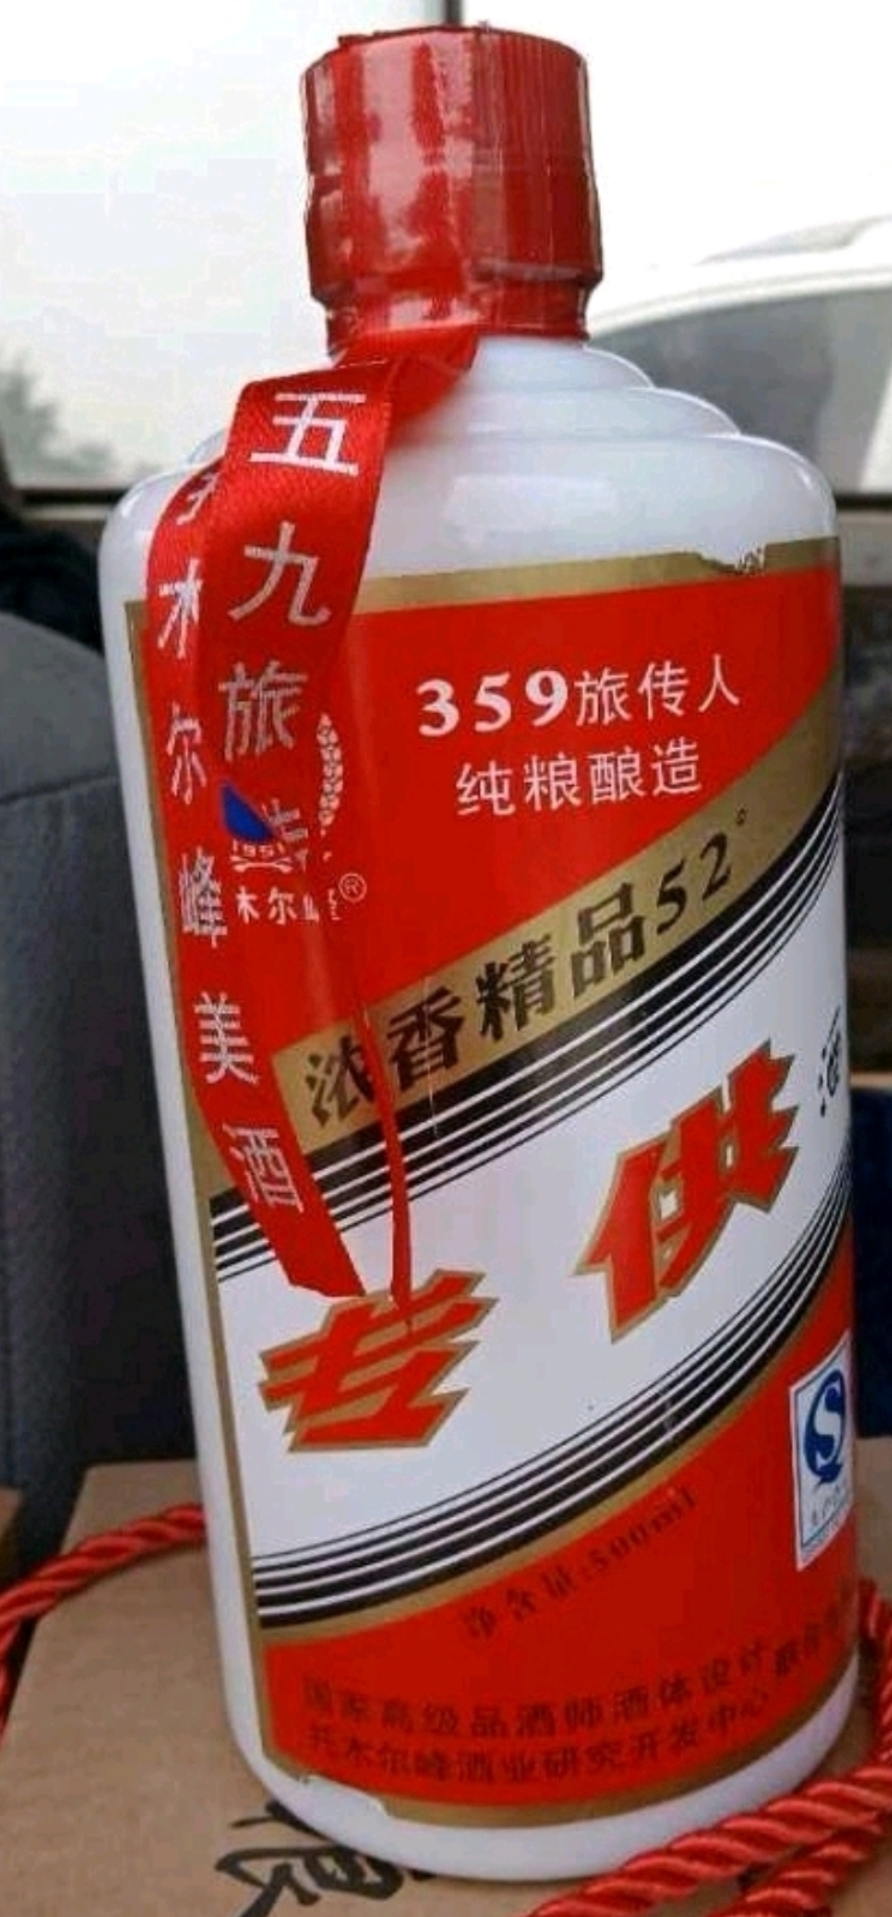 托木尔峰359旅专供浓香型500ml新疆阿克苏玉液酒